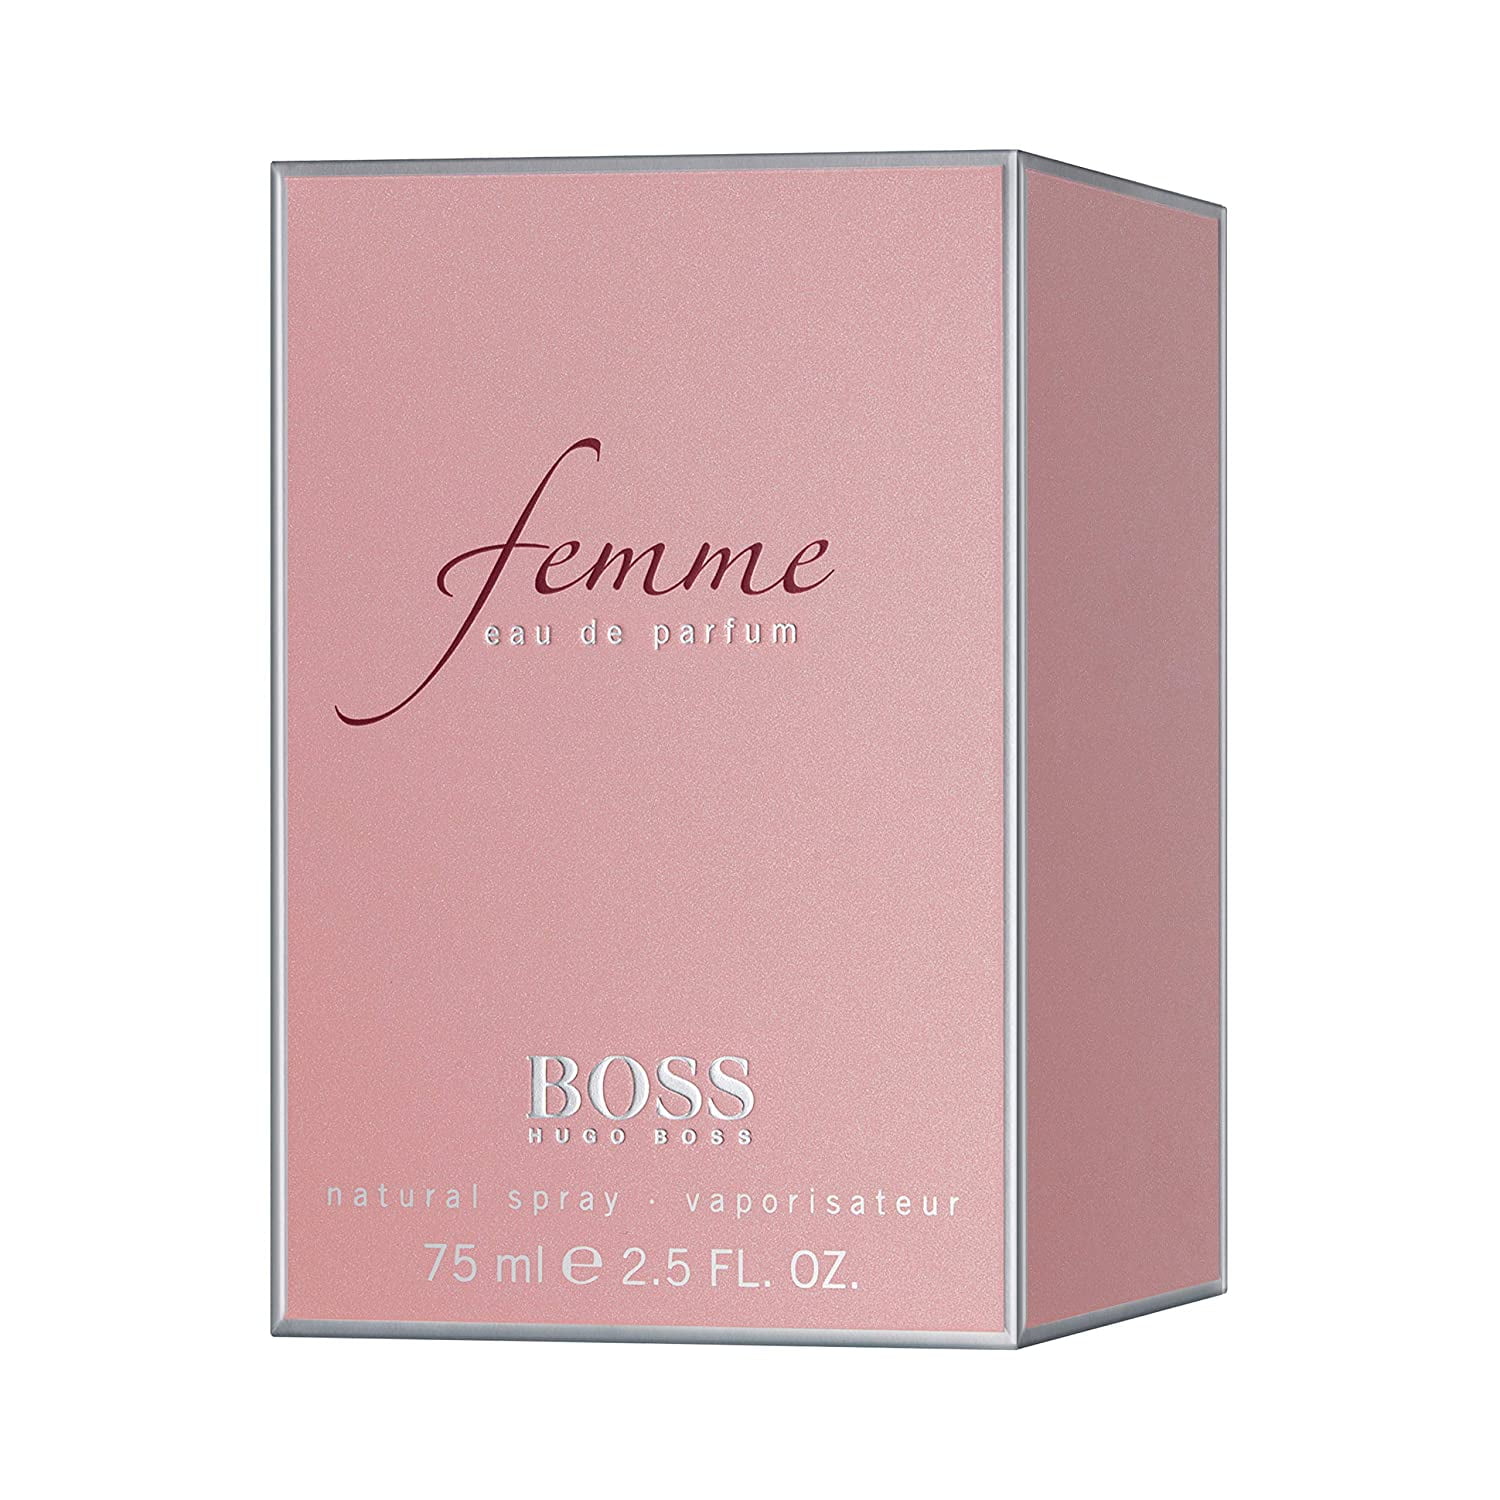 Femme by Hugo Boss Eau de Parfum 2.5 mL FL. OZ *EN Walmart.com